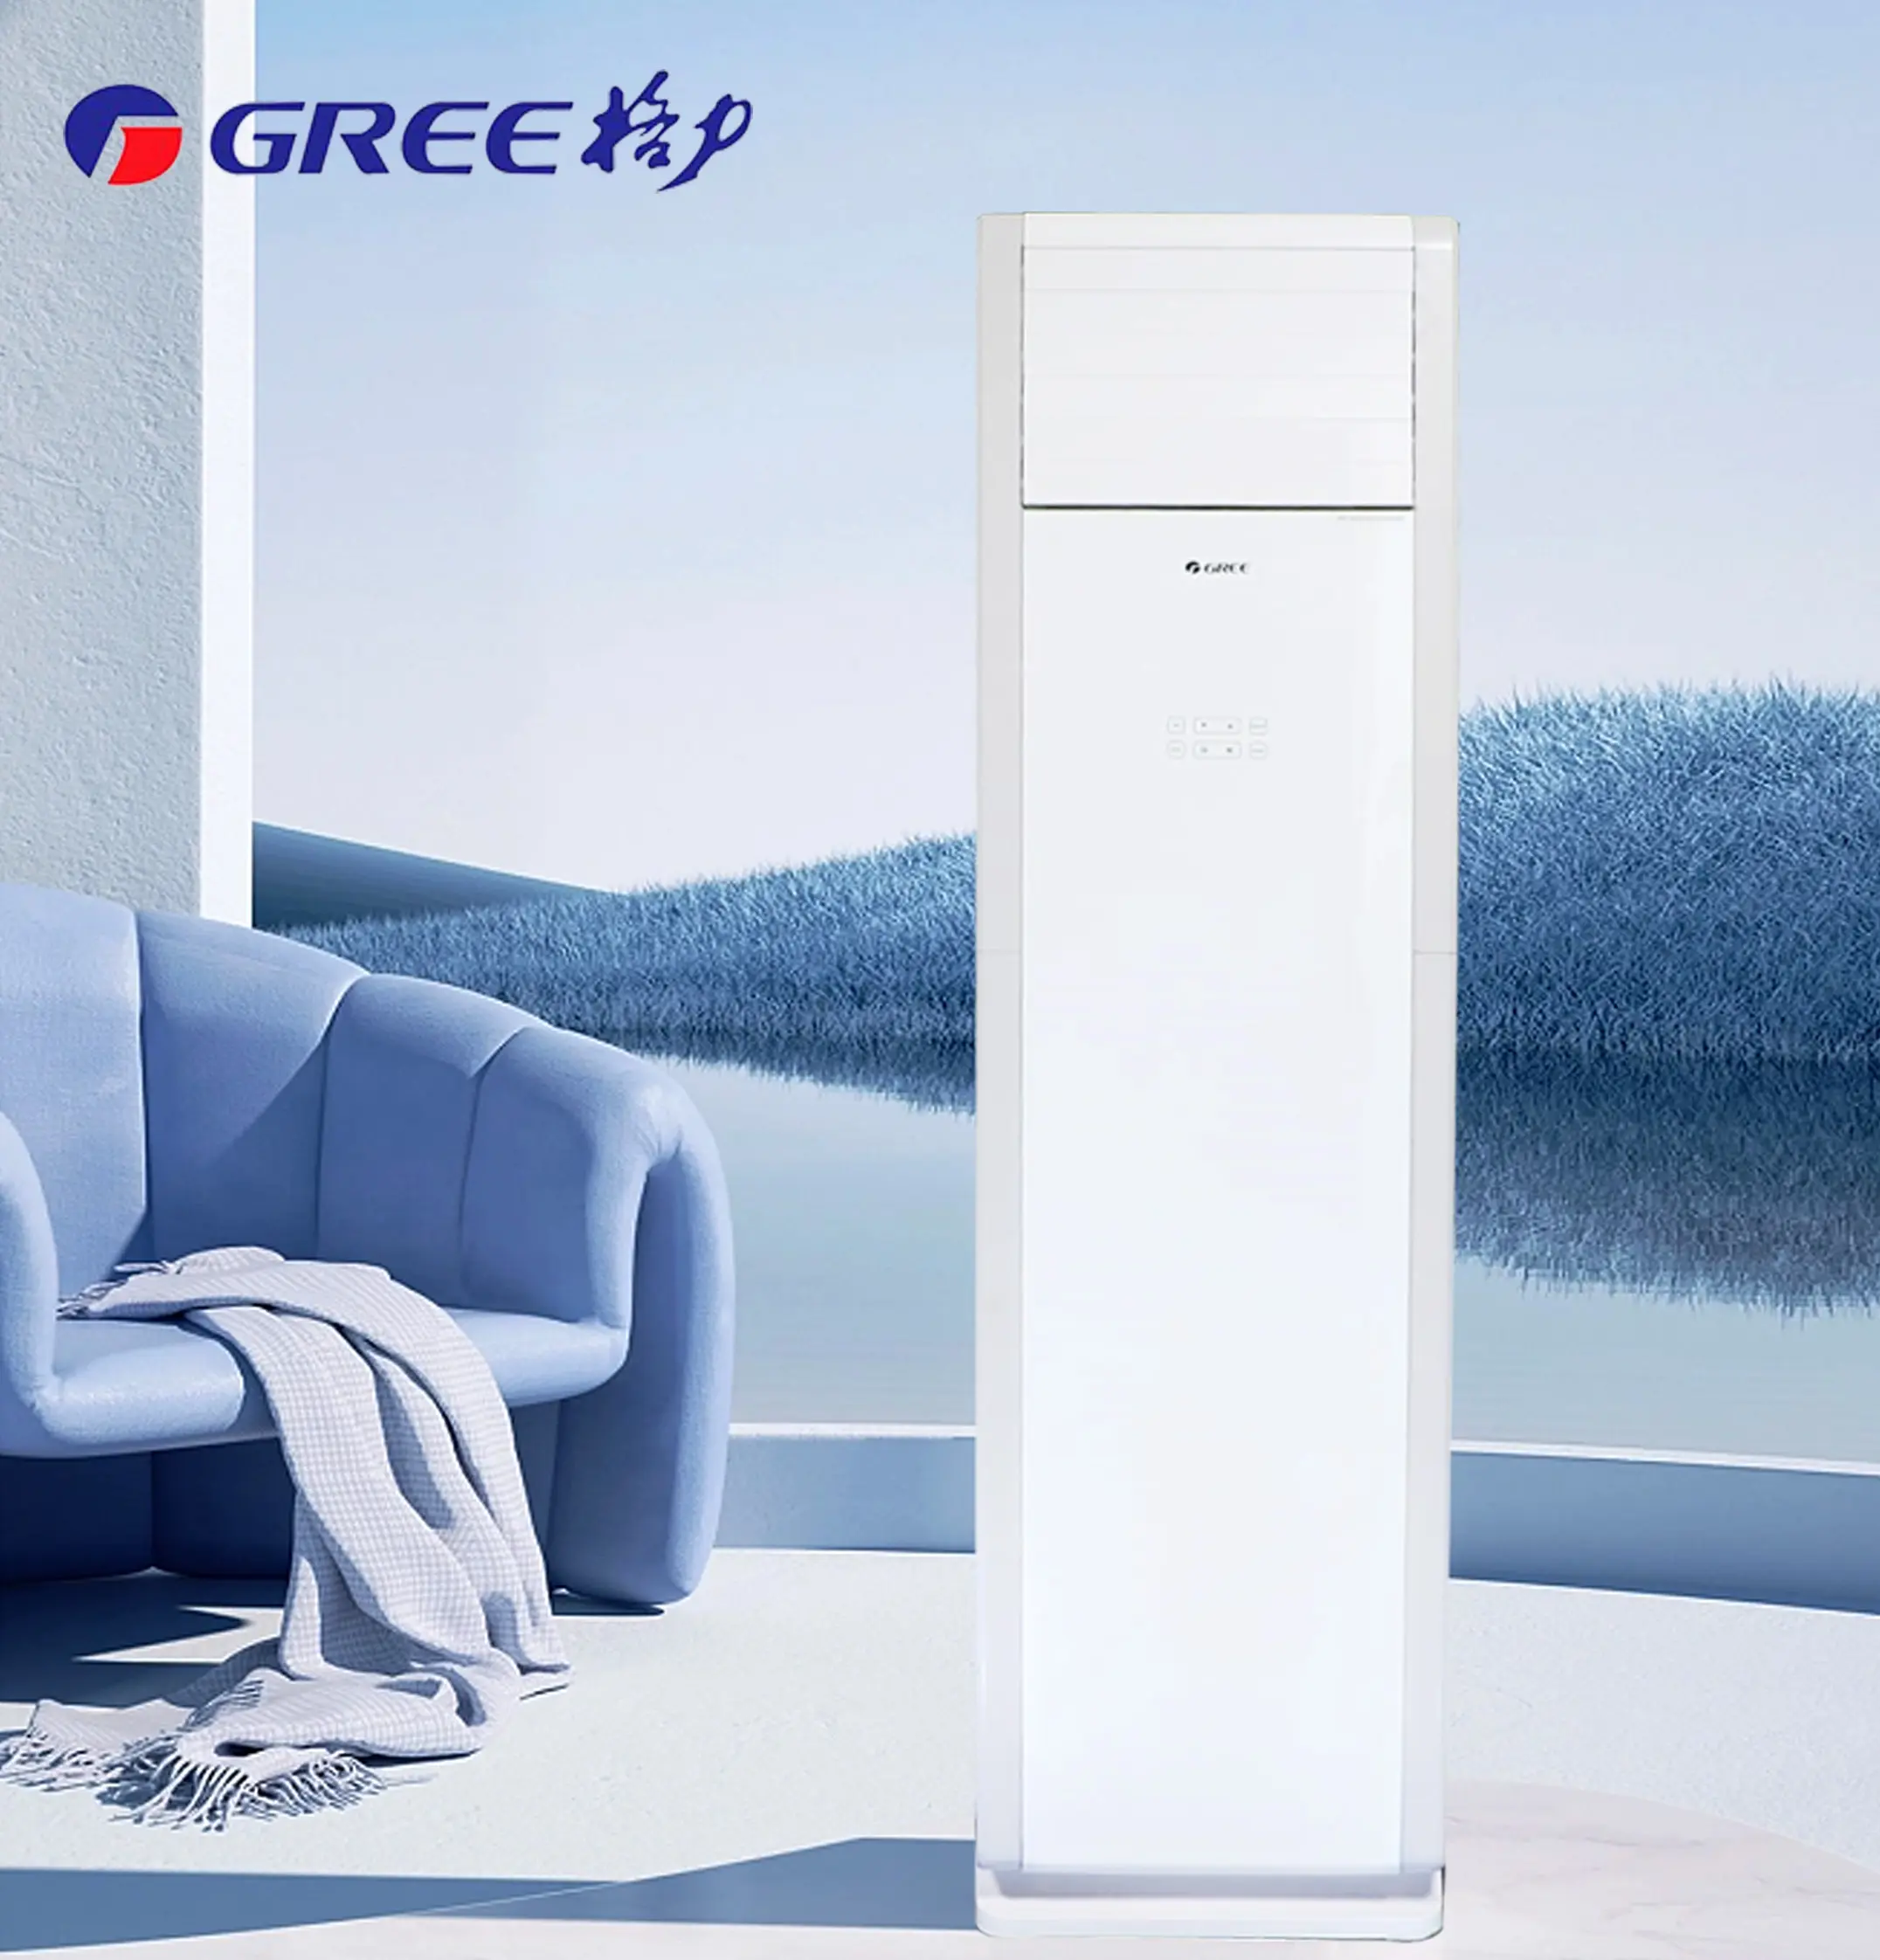 Greeインテリジェントwifi床暖房および冷房エアコン24000Btu R410A